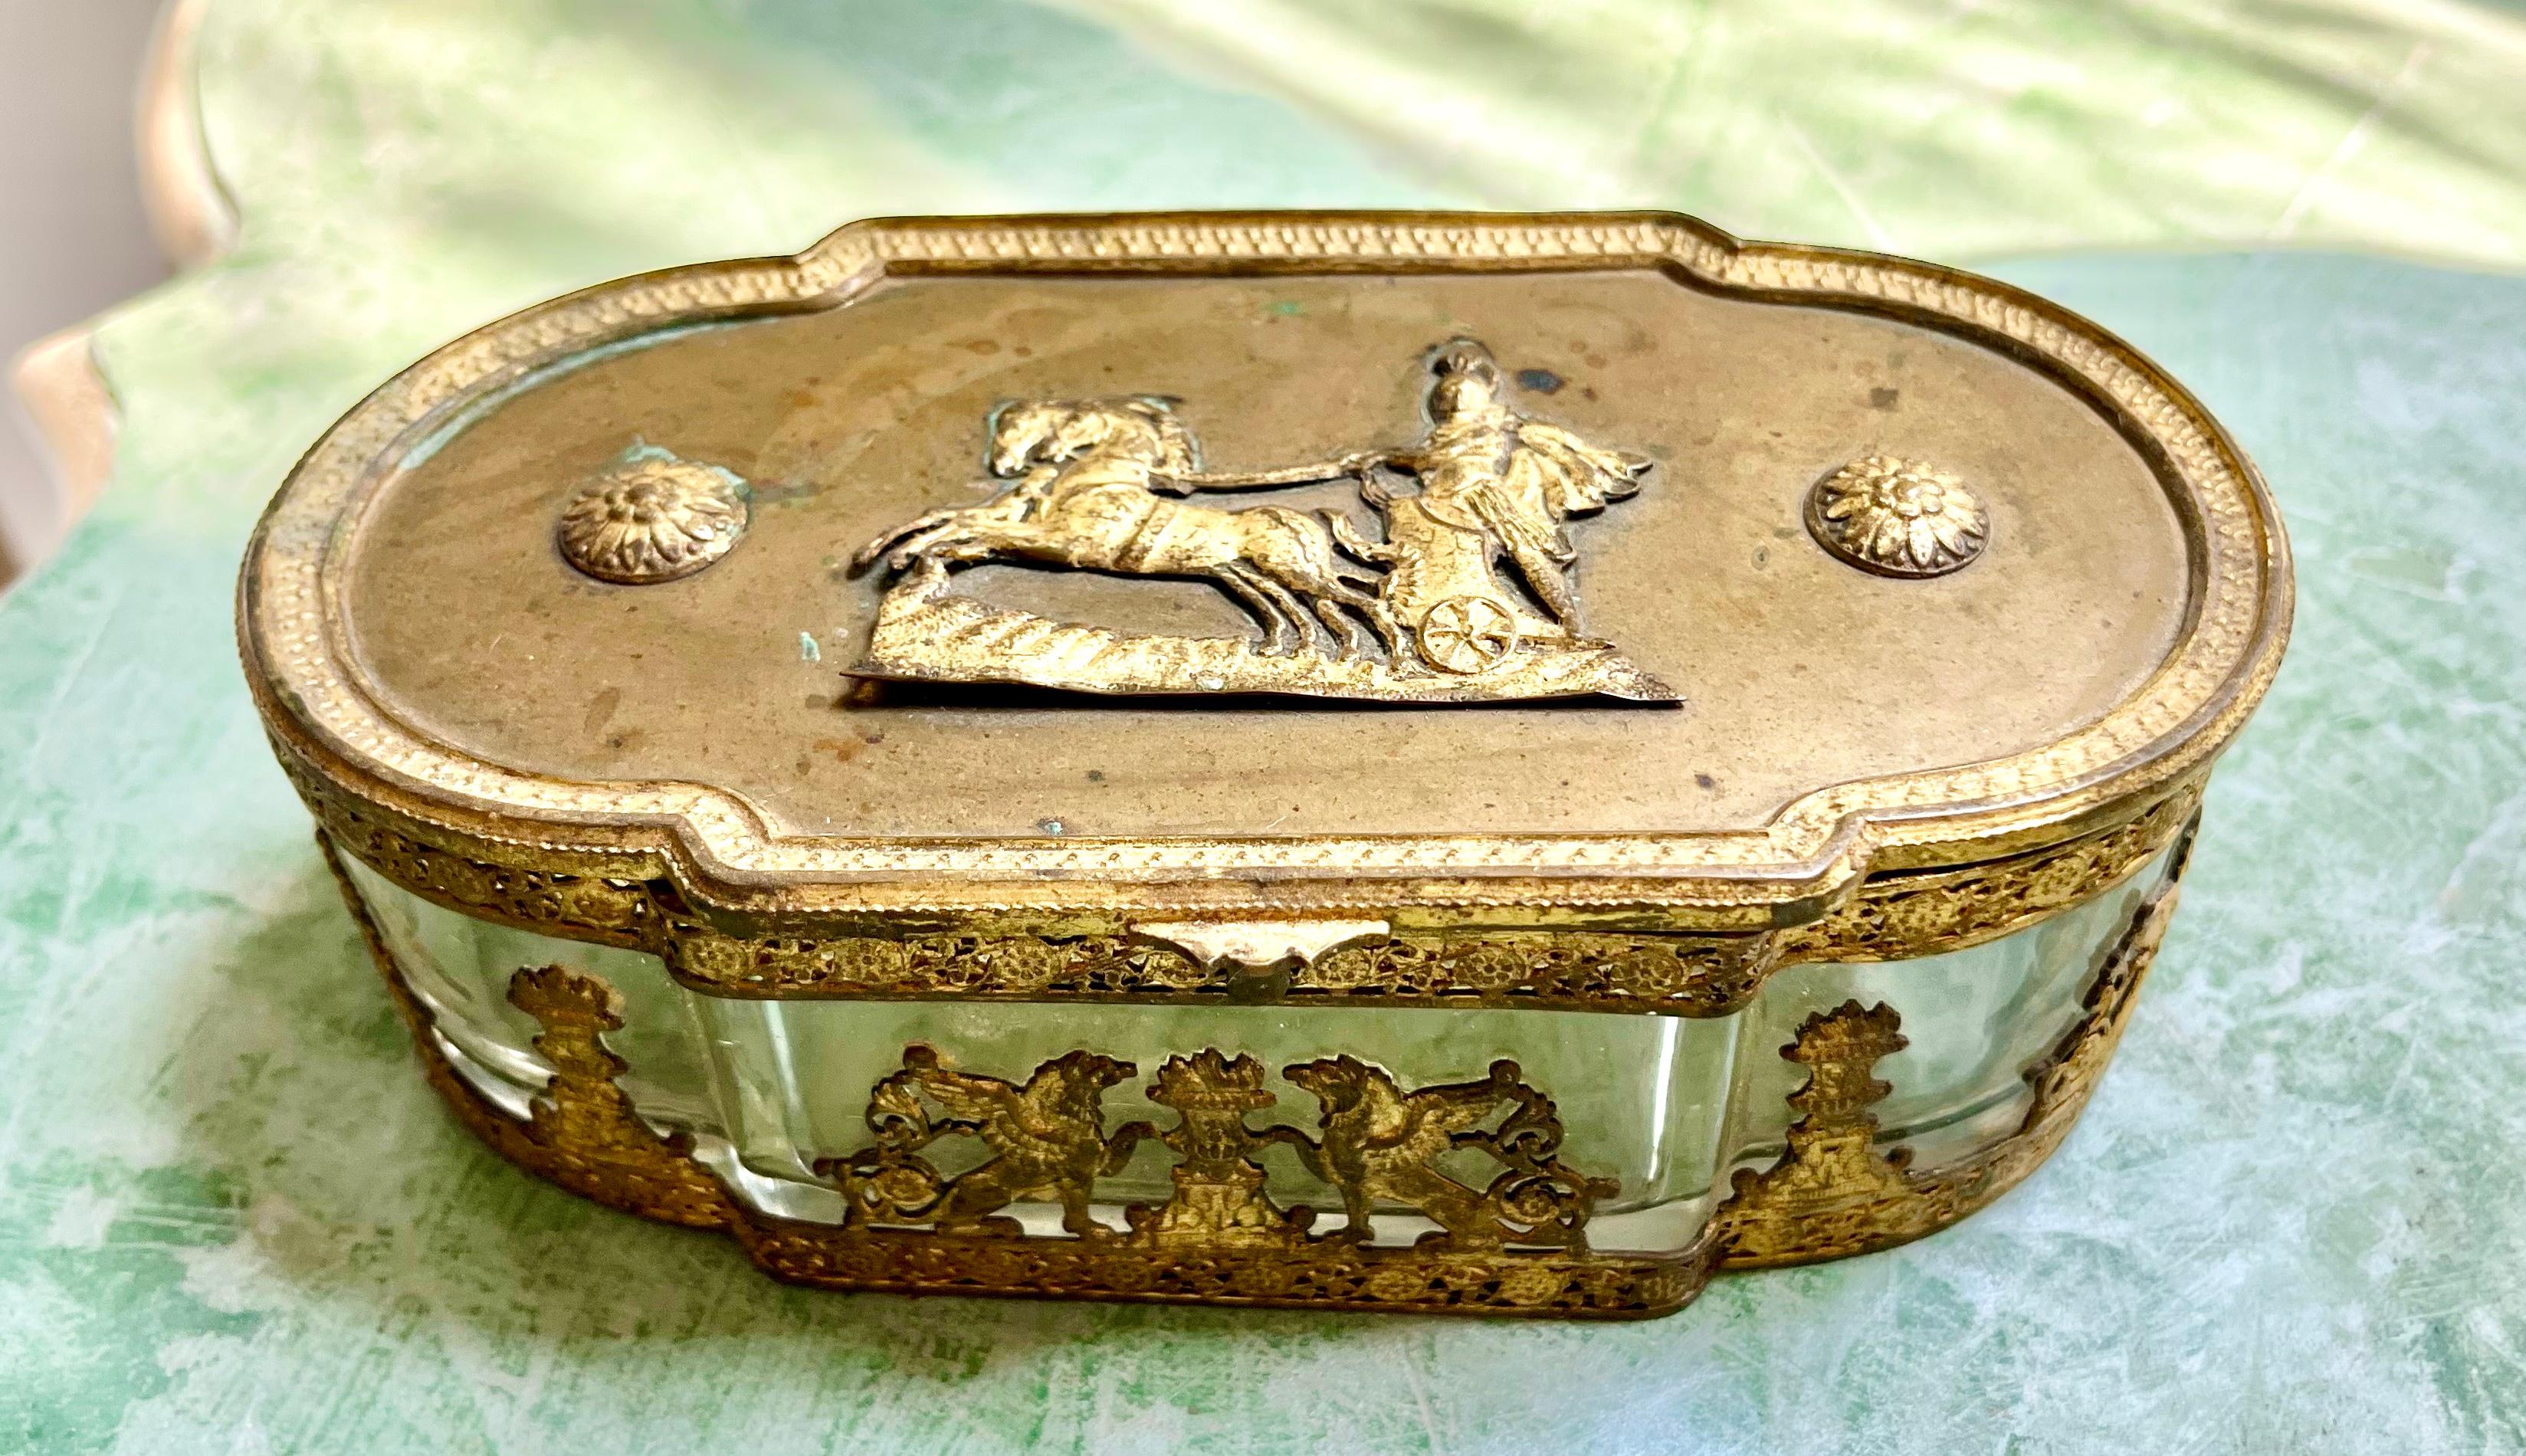 Die Dose ist eine Schmuck- oder Bonbonschatulle, verziert mit einem Bronzedeckel und Apollo in seinem mit Sonnenstrahlen geschmückten Wagen, die Seiten mit Greifen und Blumenurnen.

Höchstwahrscheinlich ein teures Geschenk oder Souvenir zur Zeit der